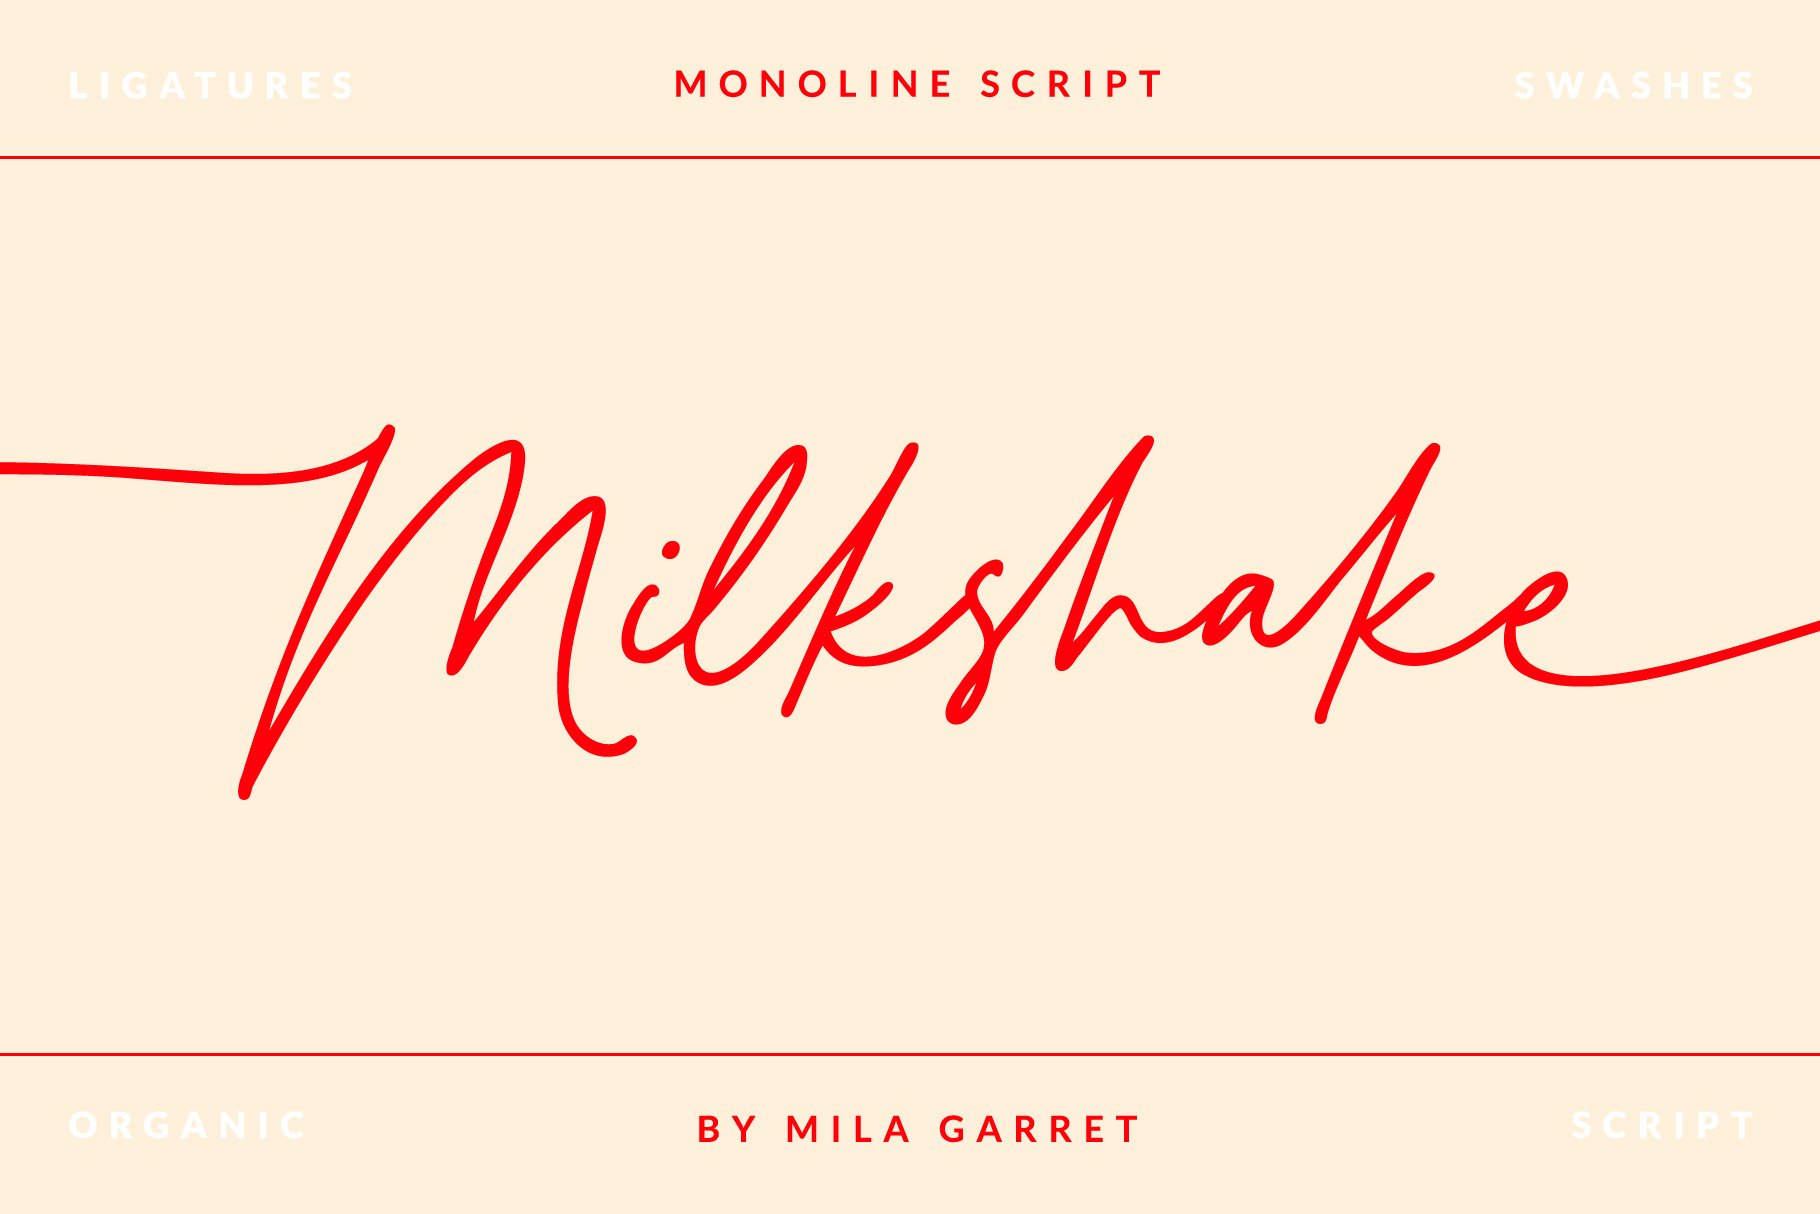 Milkshake Modern Handwritten Script cover image.